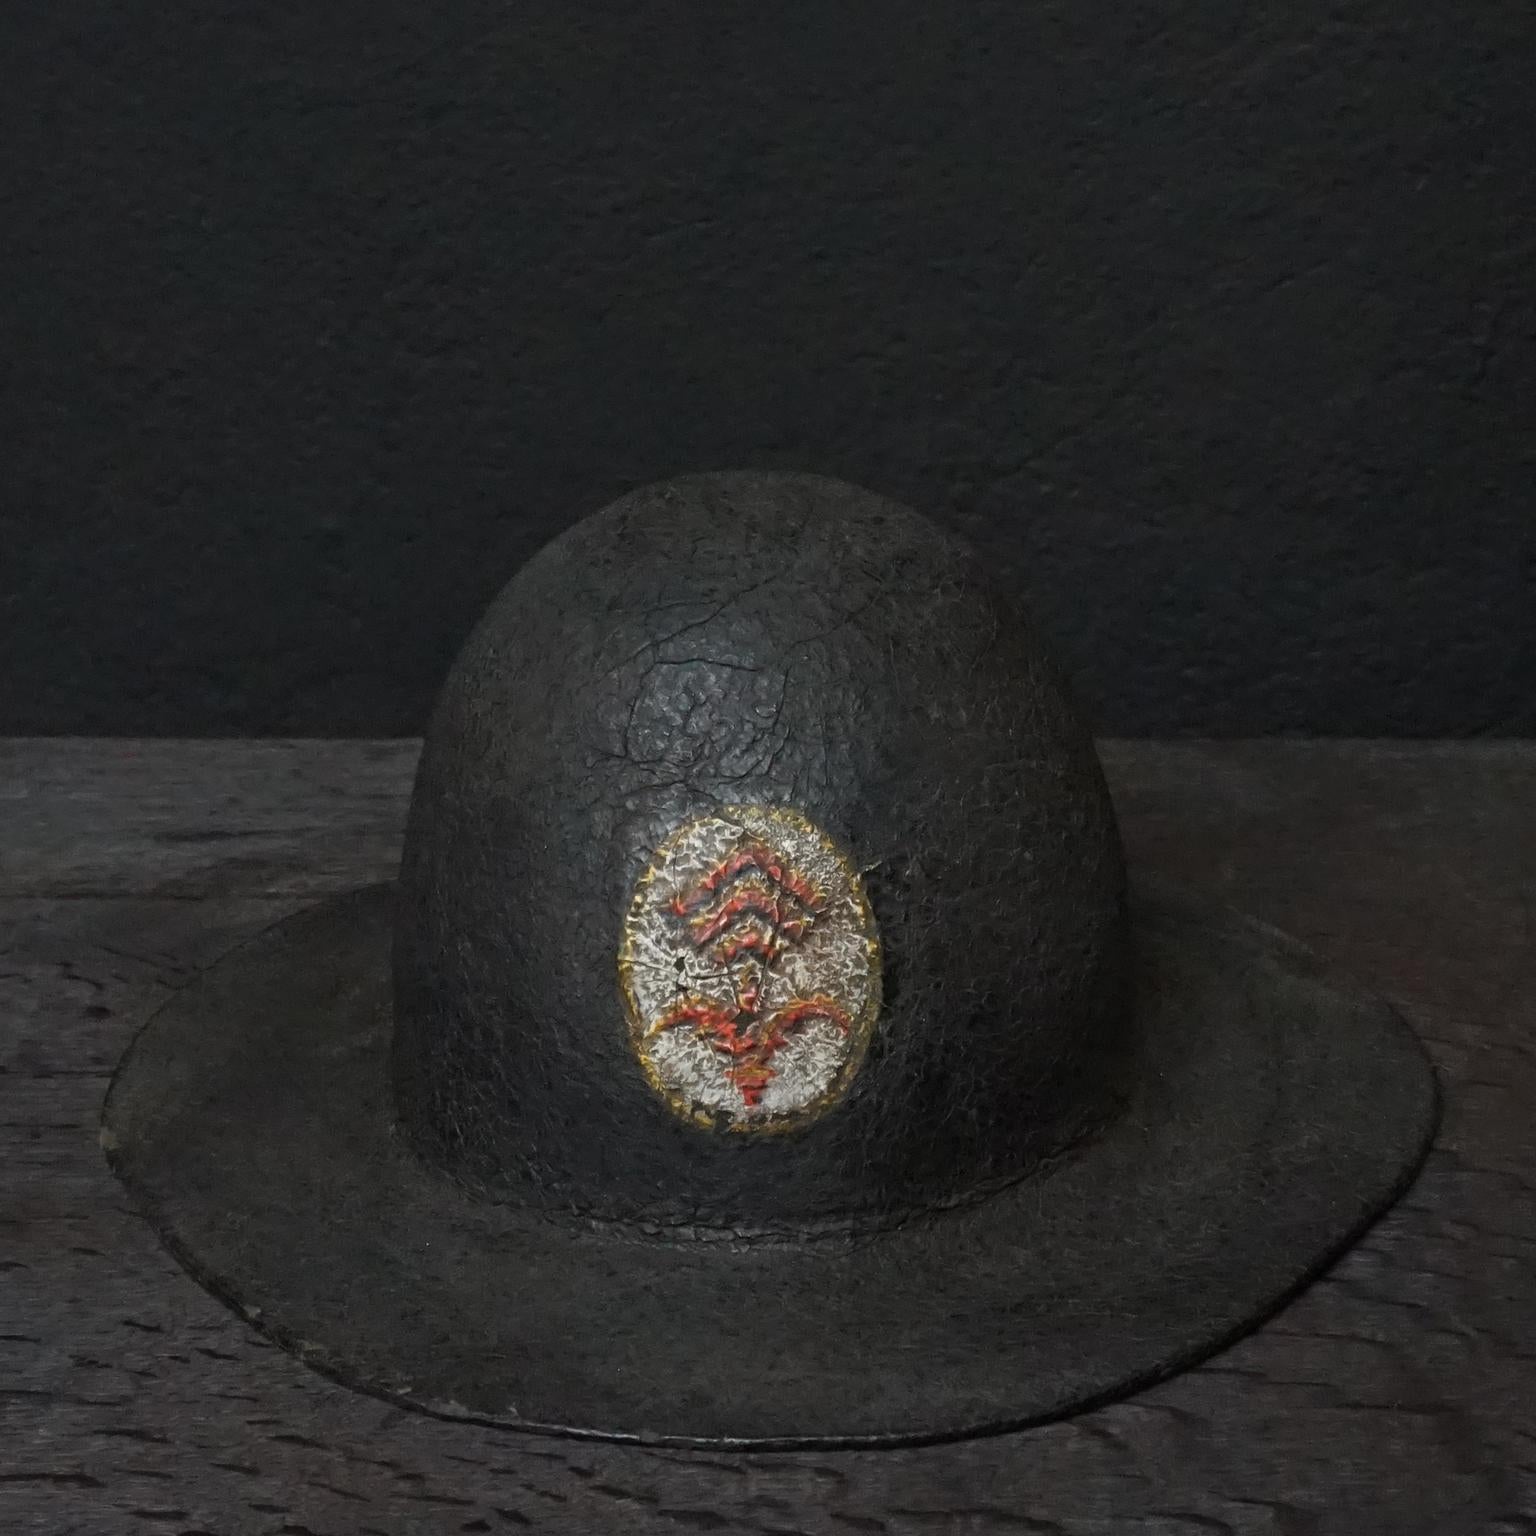 casque de pompier français du XIXe siècle, en cuir noir peint, avec logo peint avec ce qui ressemble à un 